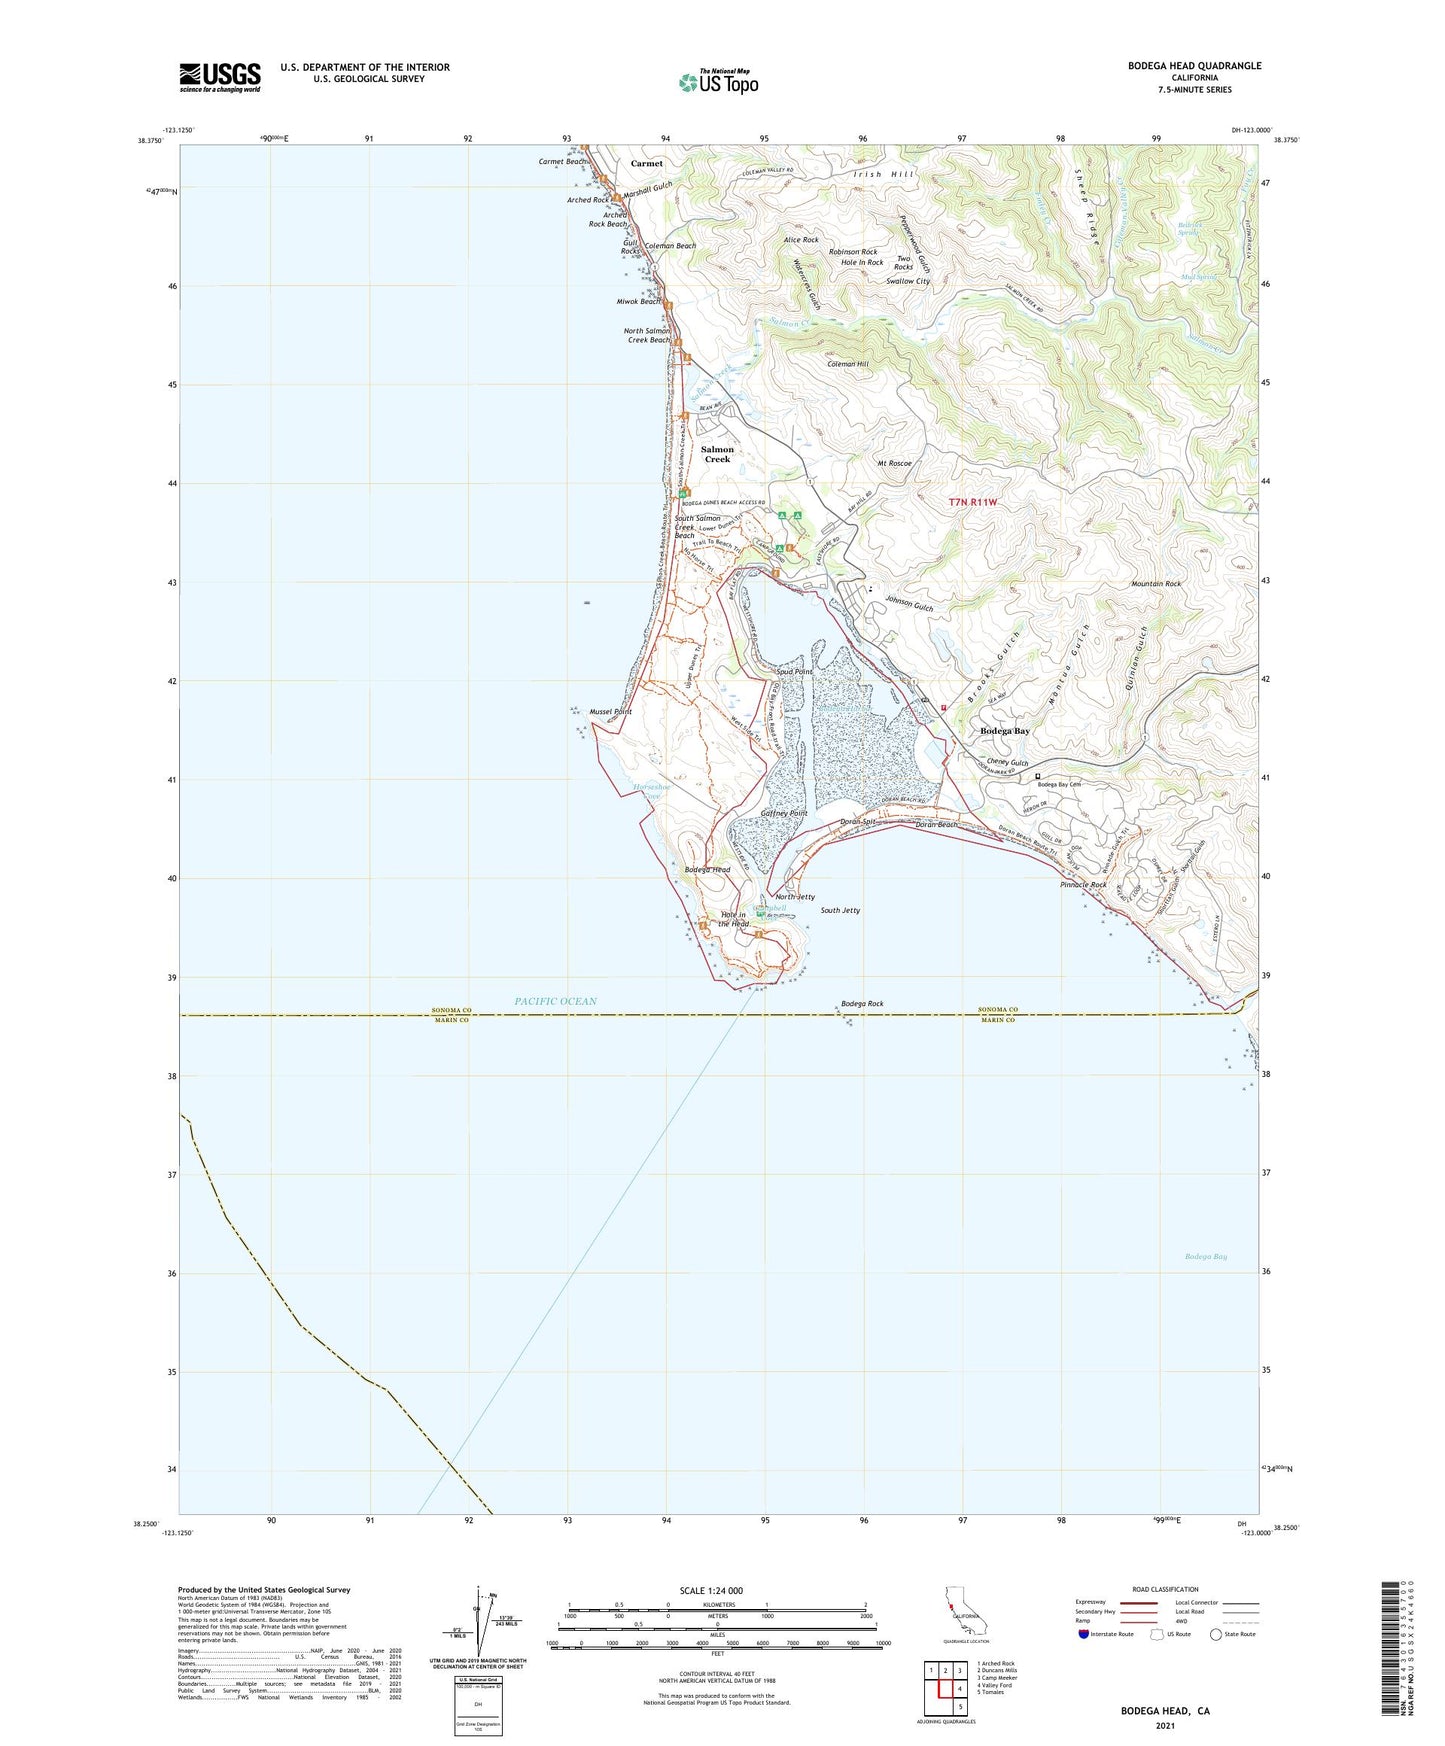 Bodega Head California US Topo Map Image